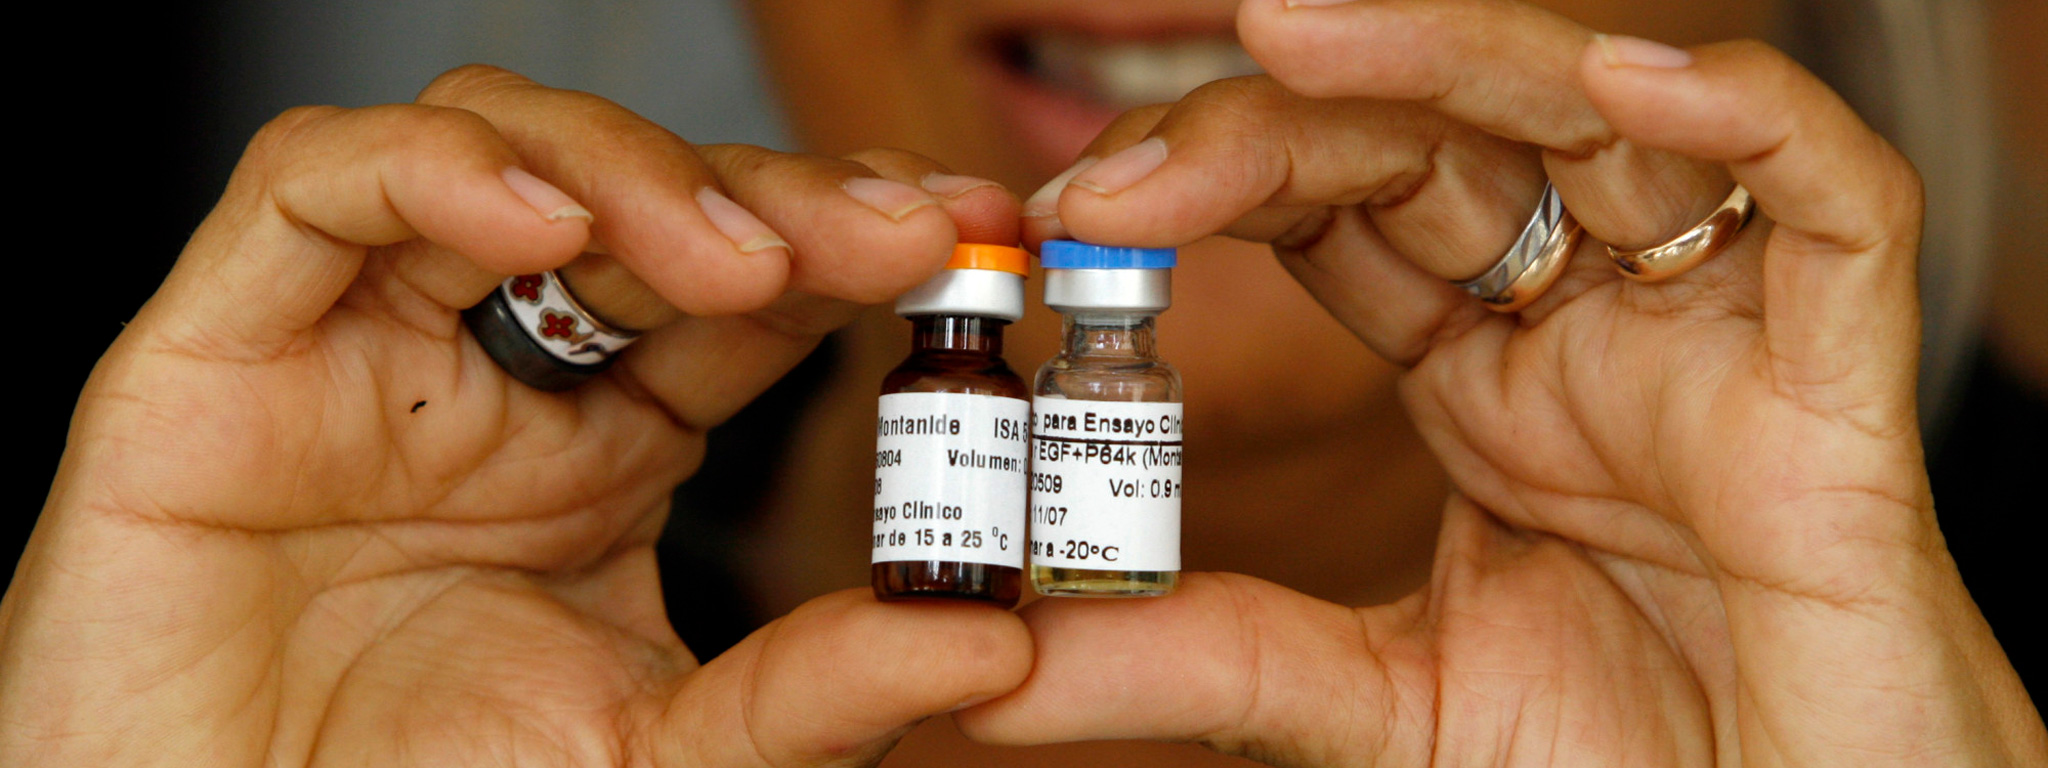 Vaccine ung thư phổi của Cuba bắt đầu được thử nghiệm tại Mỹ